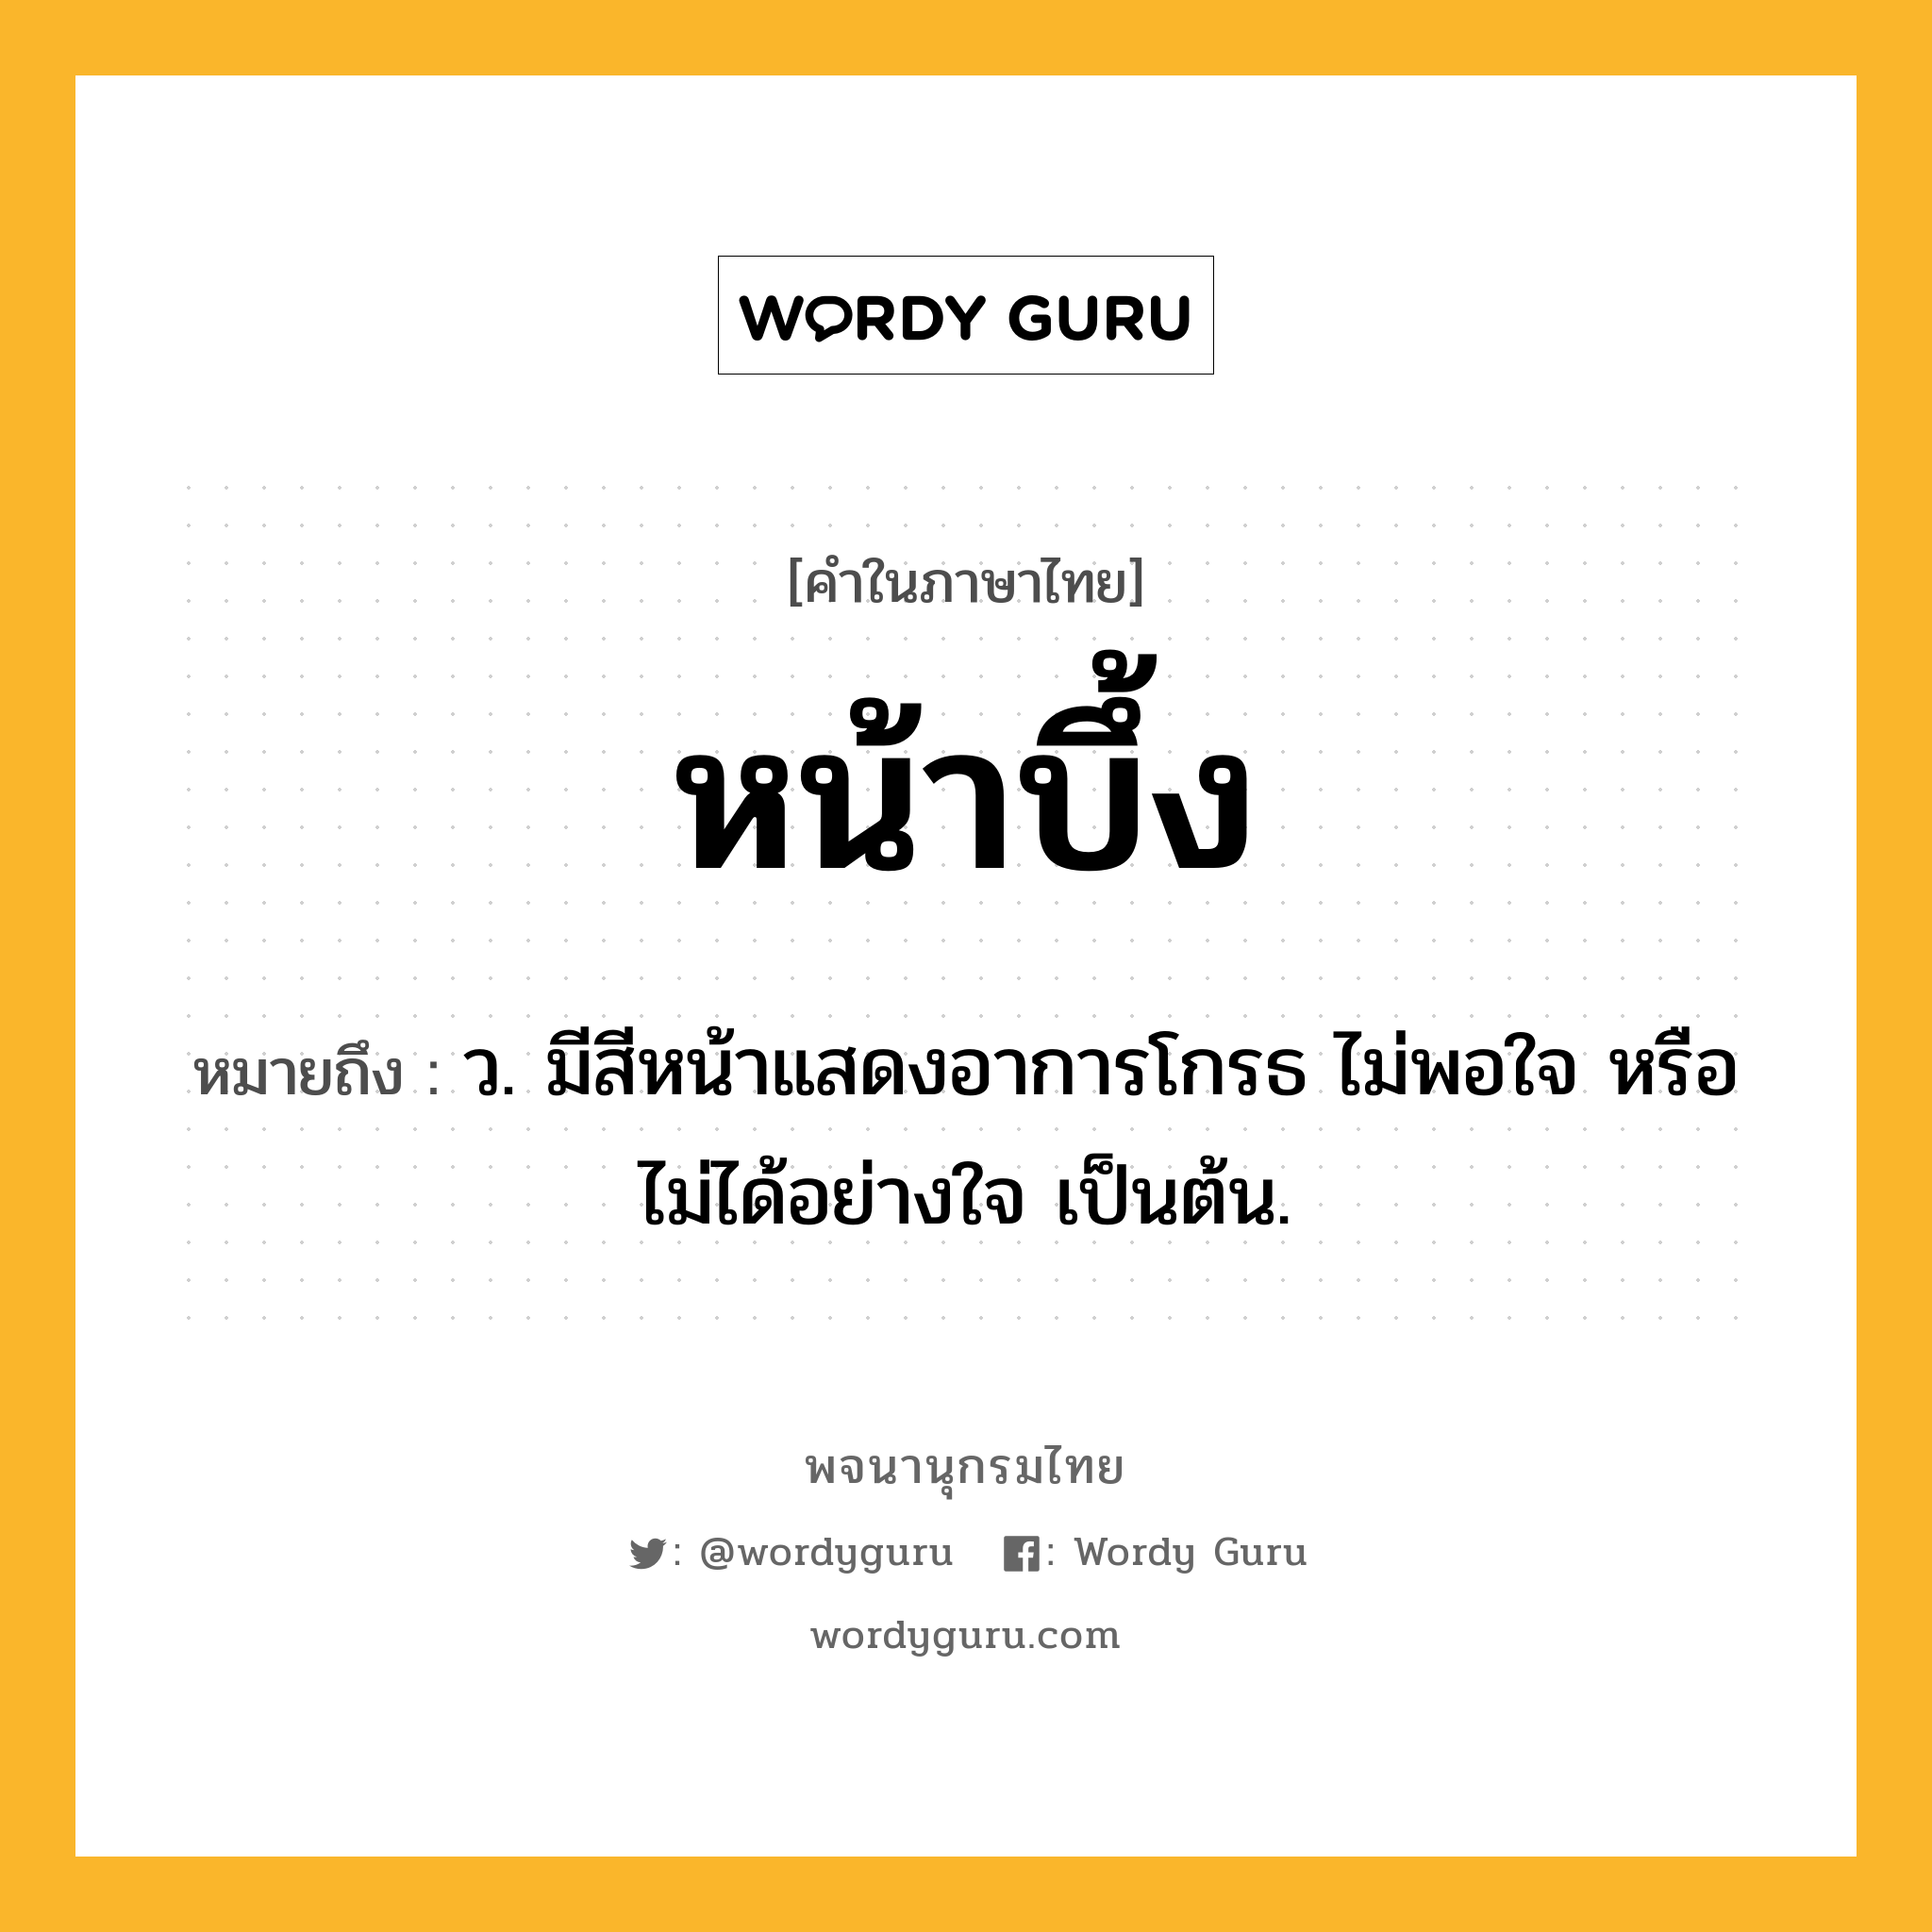 หน้าบึ้ง ความหมาย หมายถึงอะไร?, คำในภาษาไทย หน้าบึ้ง หมายถึง ว. มีสีหน้าแสดงอาการโกรธ ไม่พอใจ หรือไม่ได้อย่างใจ เป็นต้น.